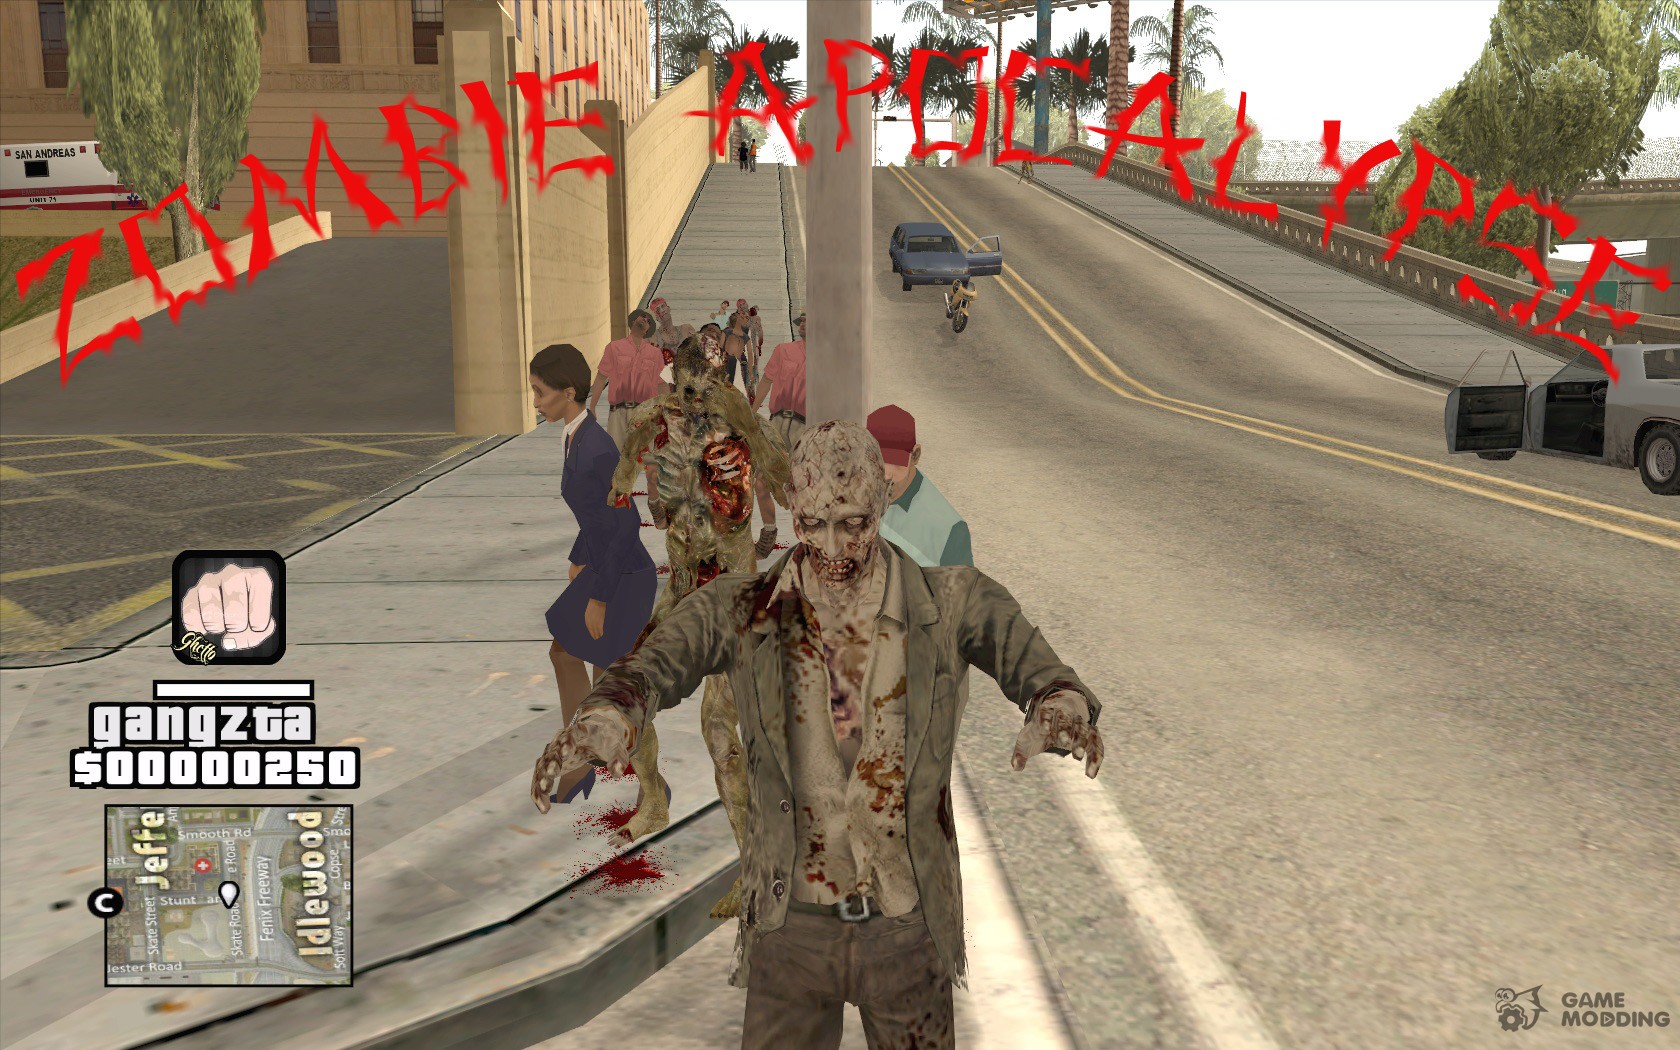 How to play GTA Zombie Apocalypse mod - Charlie INTEL